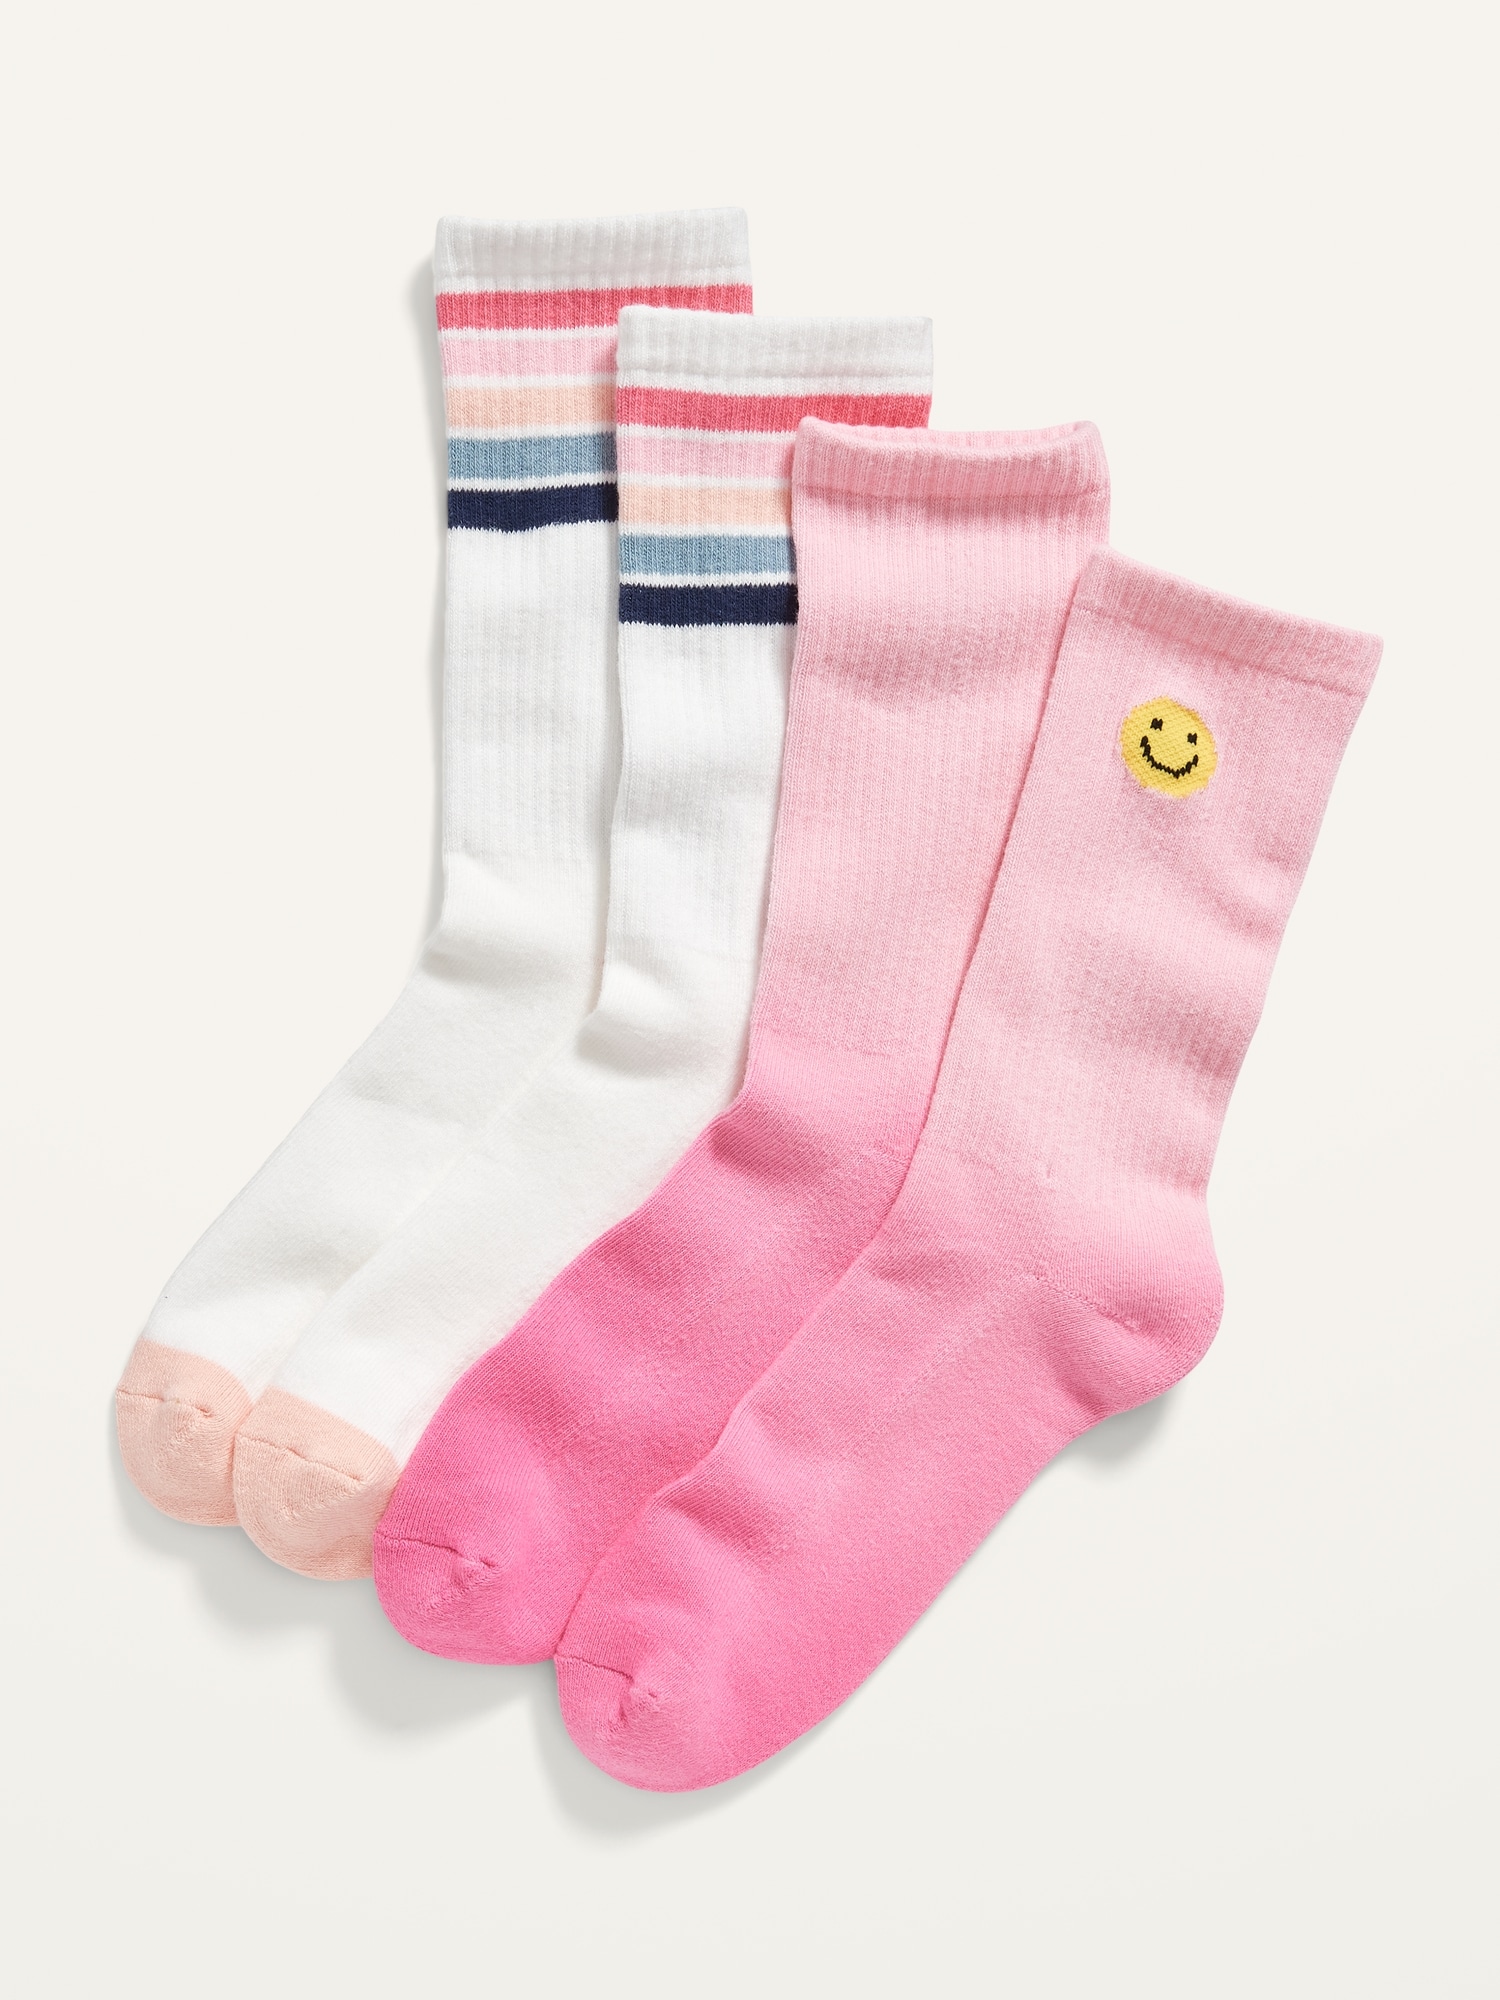 Soft-Knit Crew Socks 2-Pack for Women | Old Navy